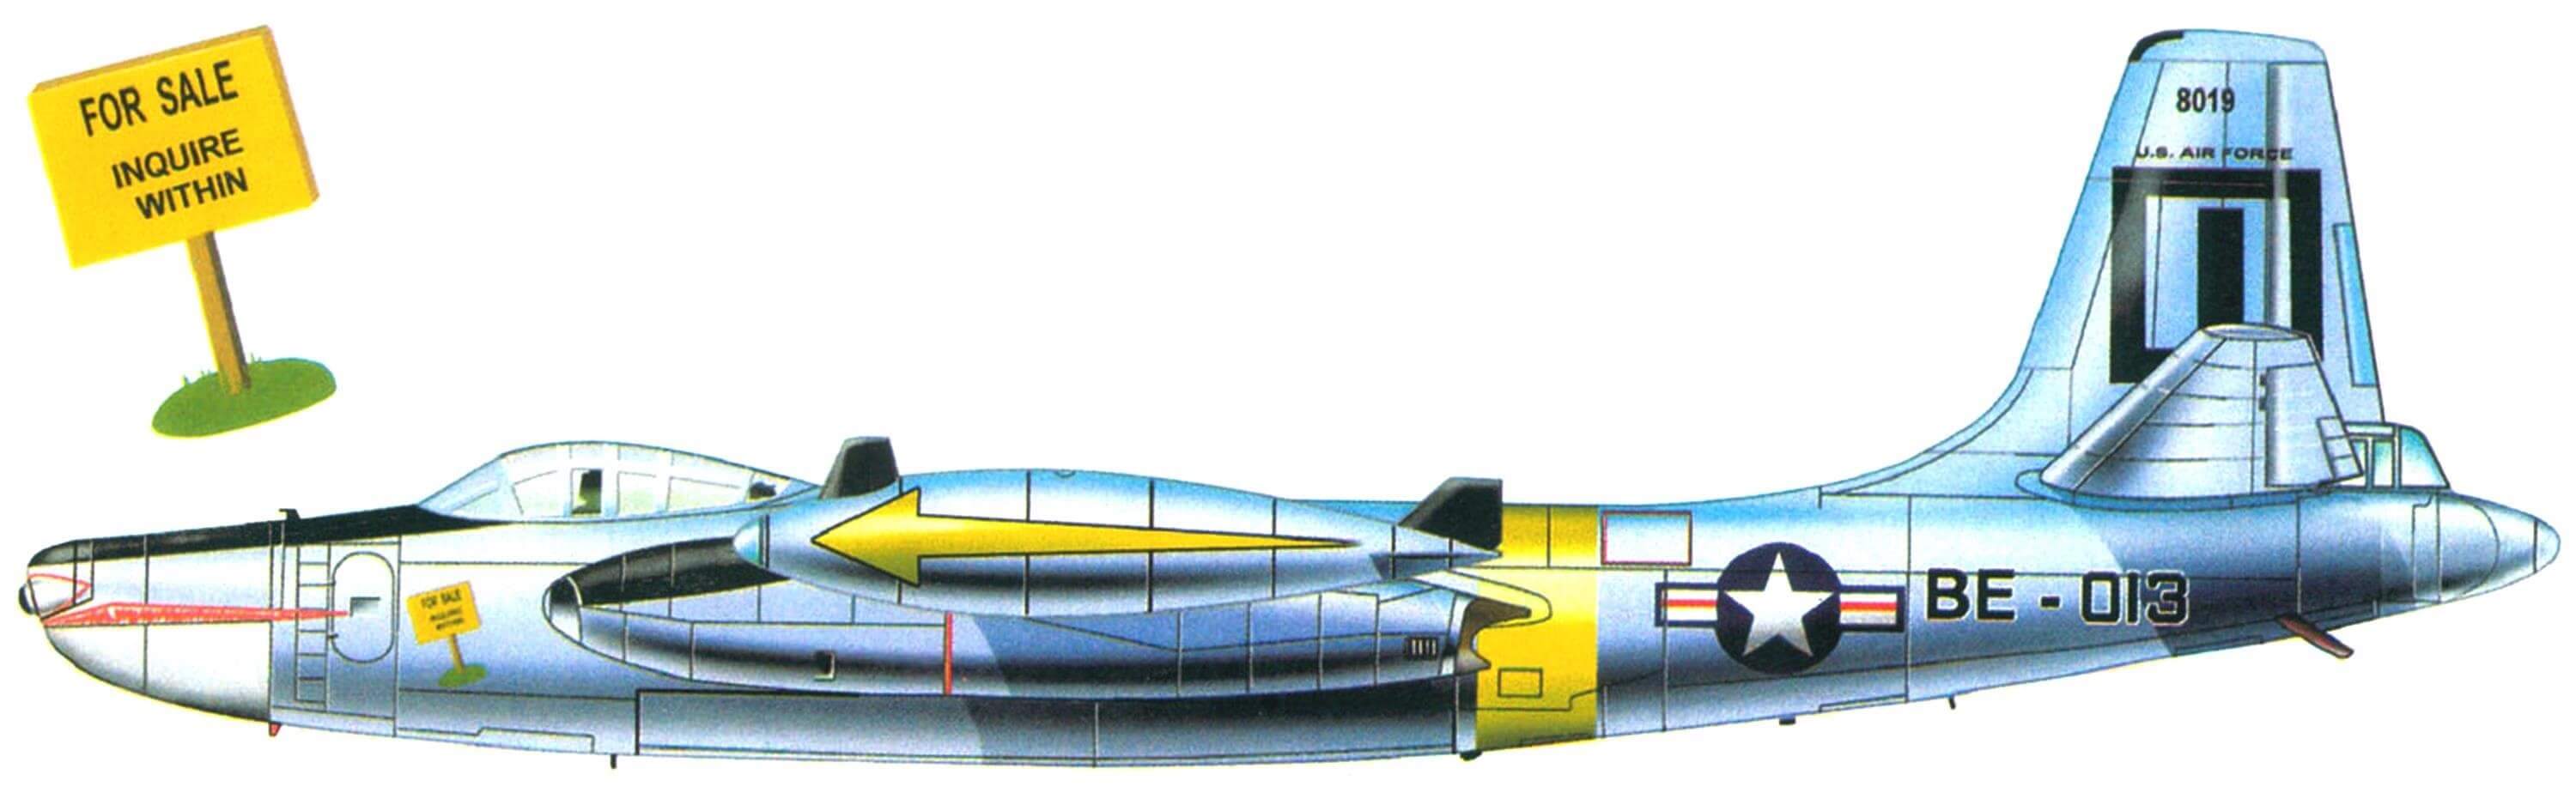 RB-45C-1 из 91-й стратегической разведывательной эскадрильи. Базировался на авиабазе Йокота Война в Корее, 1953 г.